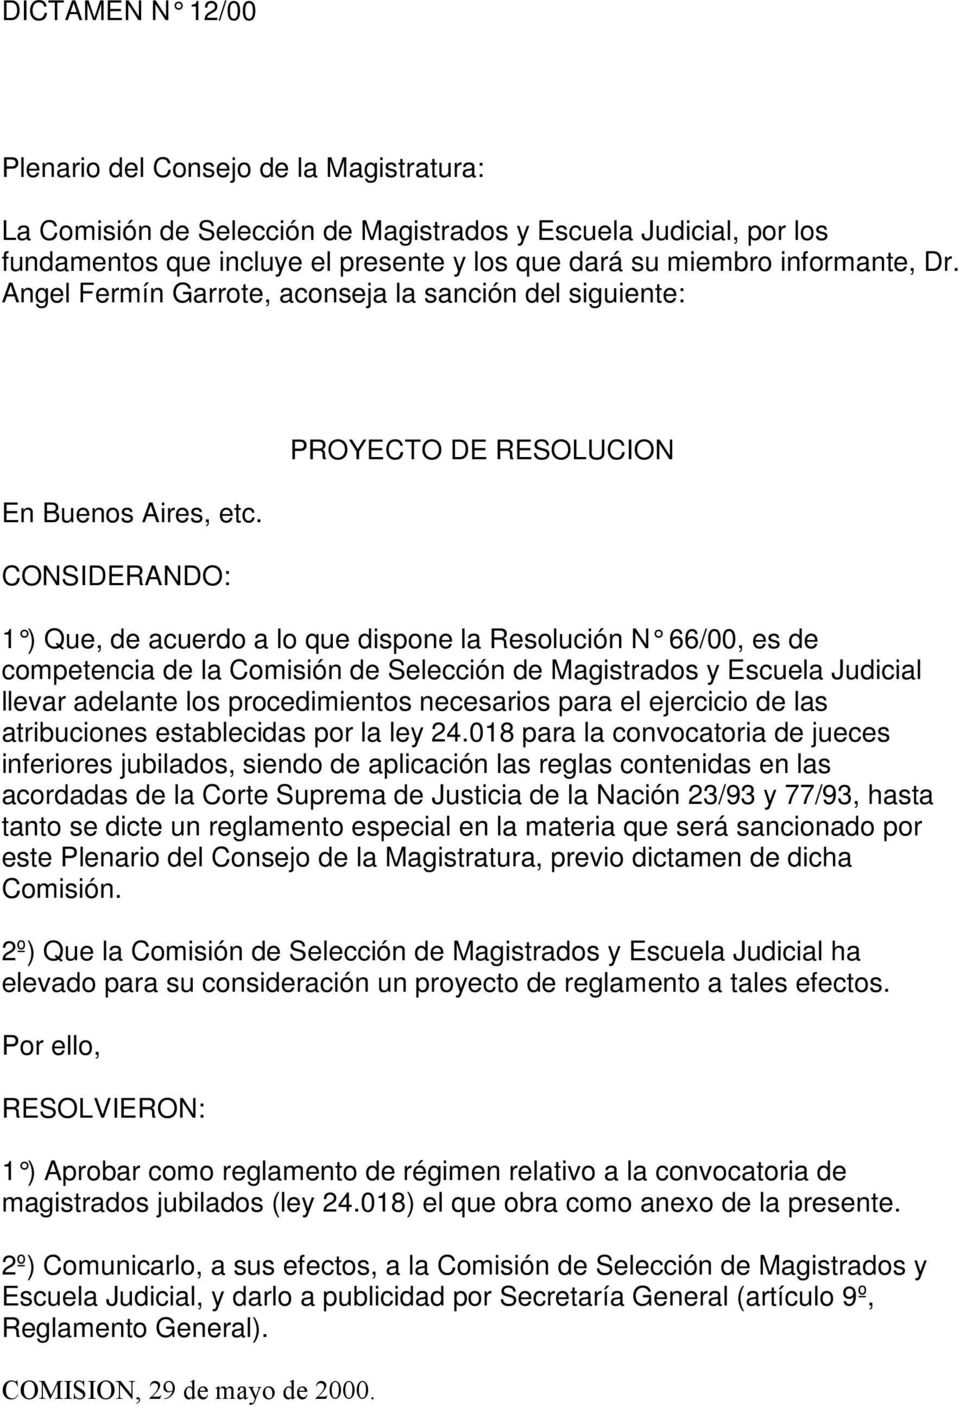 CONSIDERANDO: PROYECTO DE RESOLUCION 1 ) Que, de acuerdo a lo que dispone la Resolución N 66/00, es de competencia de la Comisión de Selección de Magistrados y Escuela Judicial llevar adelante los